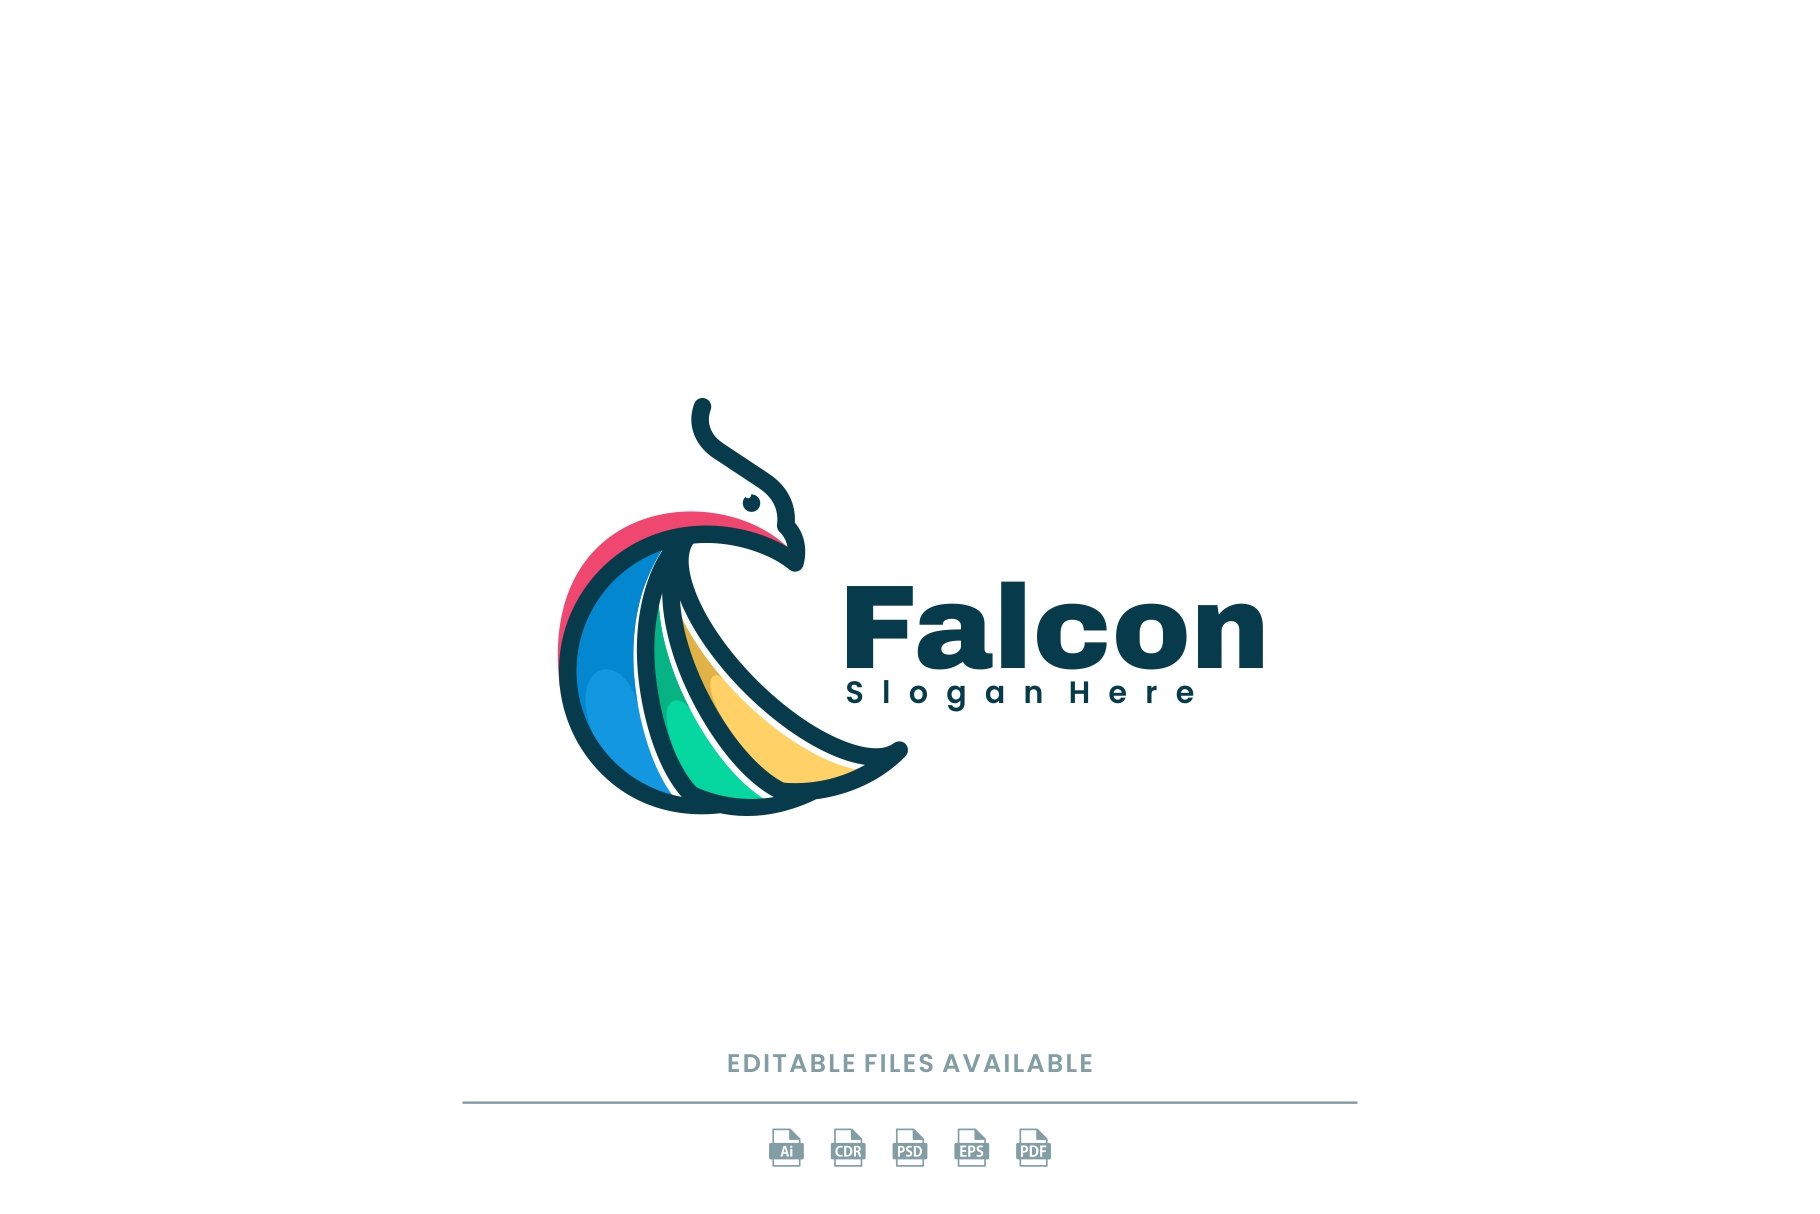 Falcon Simple Mascot Logo cover image.